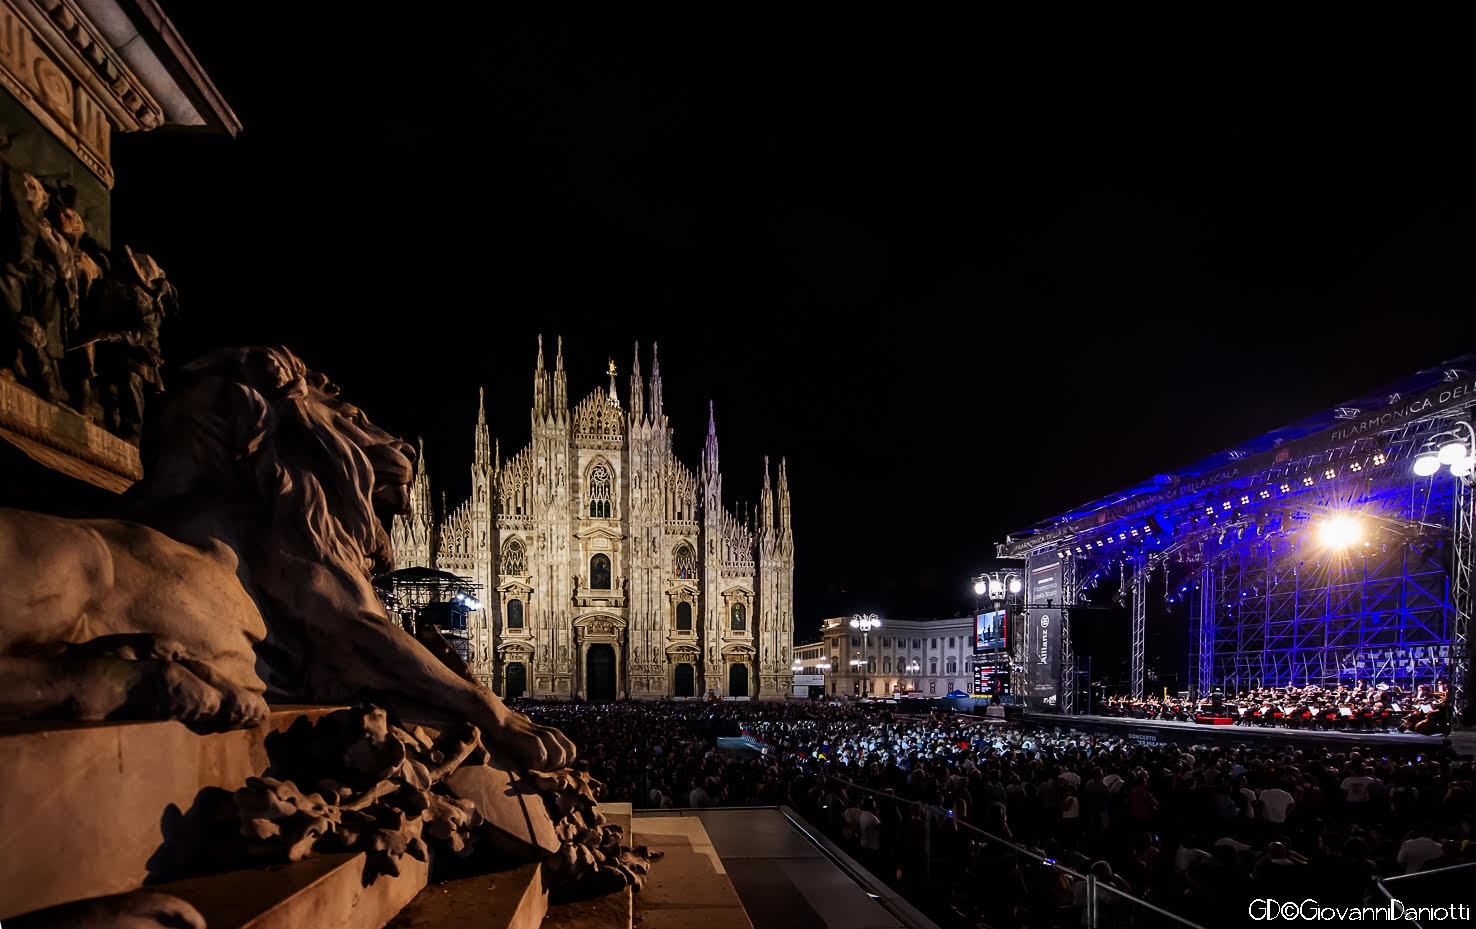 Breaking: La Scala will reopen in September with Verdi’s Requiem